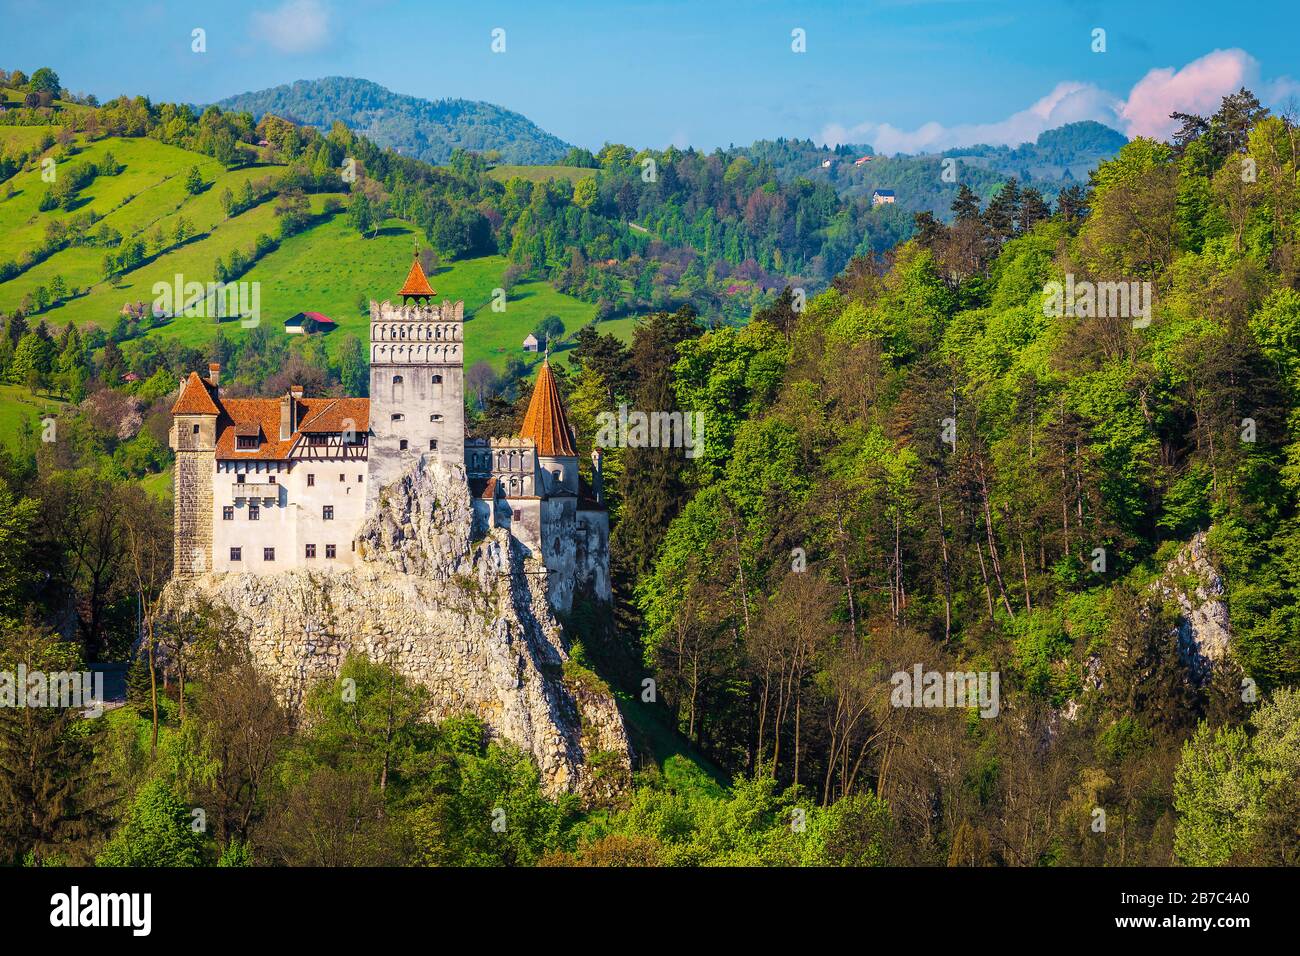 Bel emplacement ancien avec le majestueux château Dracula sur les hautes falaises, Bran, Transylvanie, Roumanie, Europe Banque D'Images